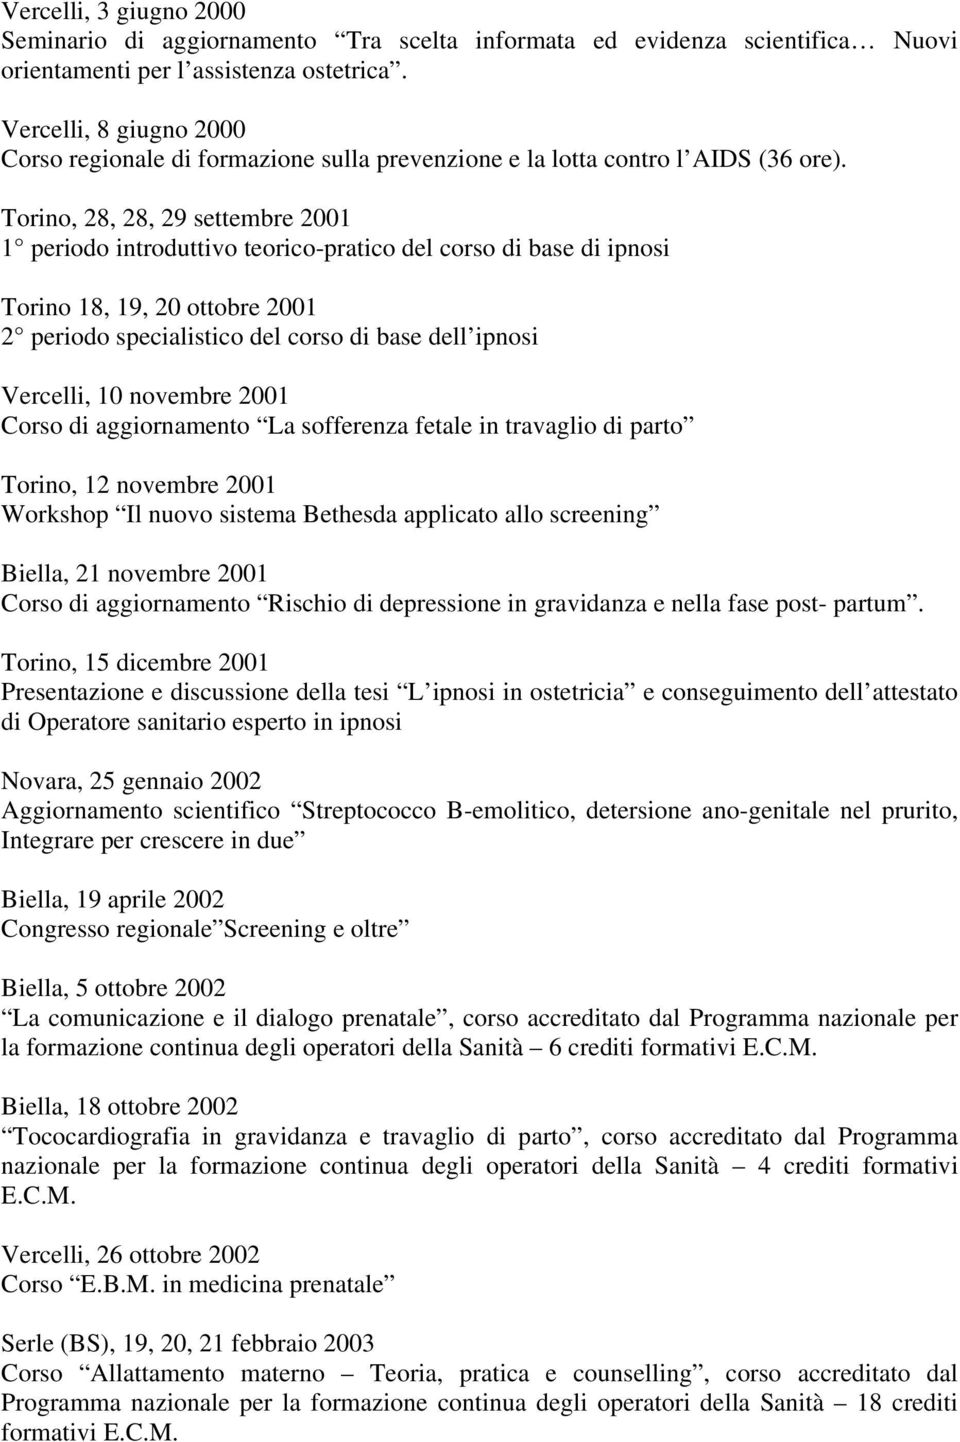 Torino, 28, 28, 29 settembre 2001 1 periodo introduttivo teorico-pratico del corso di base di ipnosi Torino 18, 19, 20 ottobre 2001 2 periodo specialistico del corso di base dell ipnosi Vercelli, 10